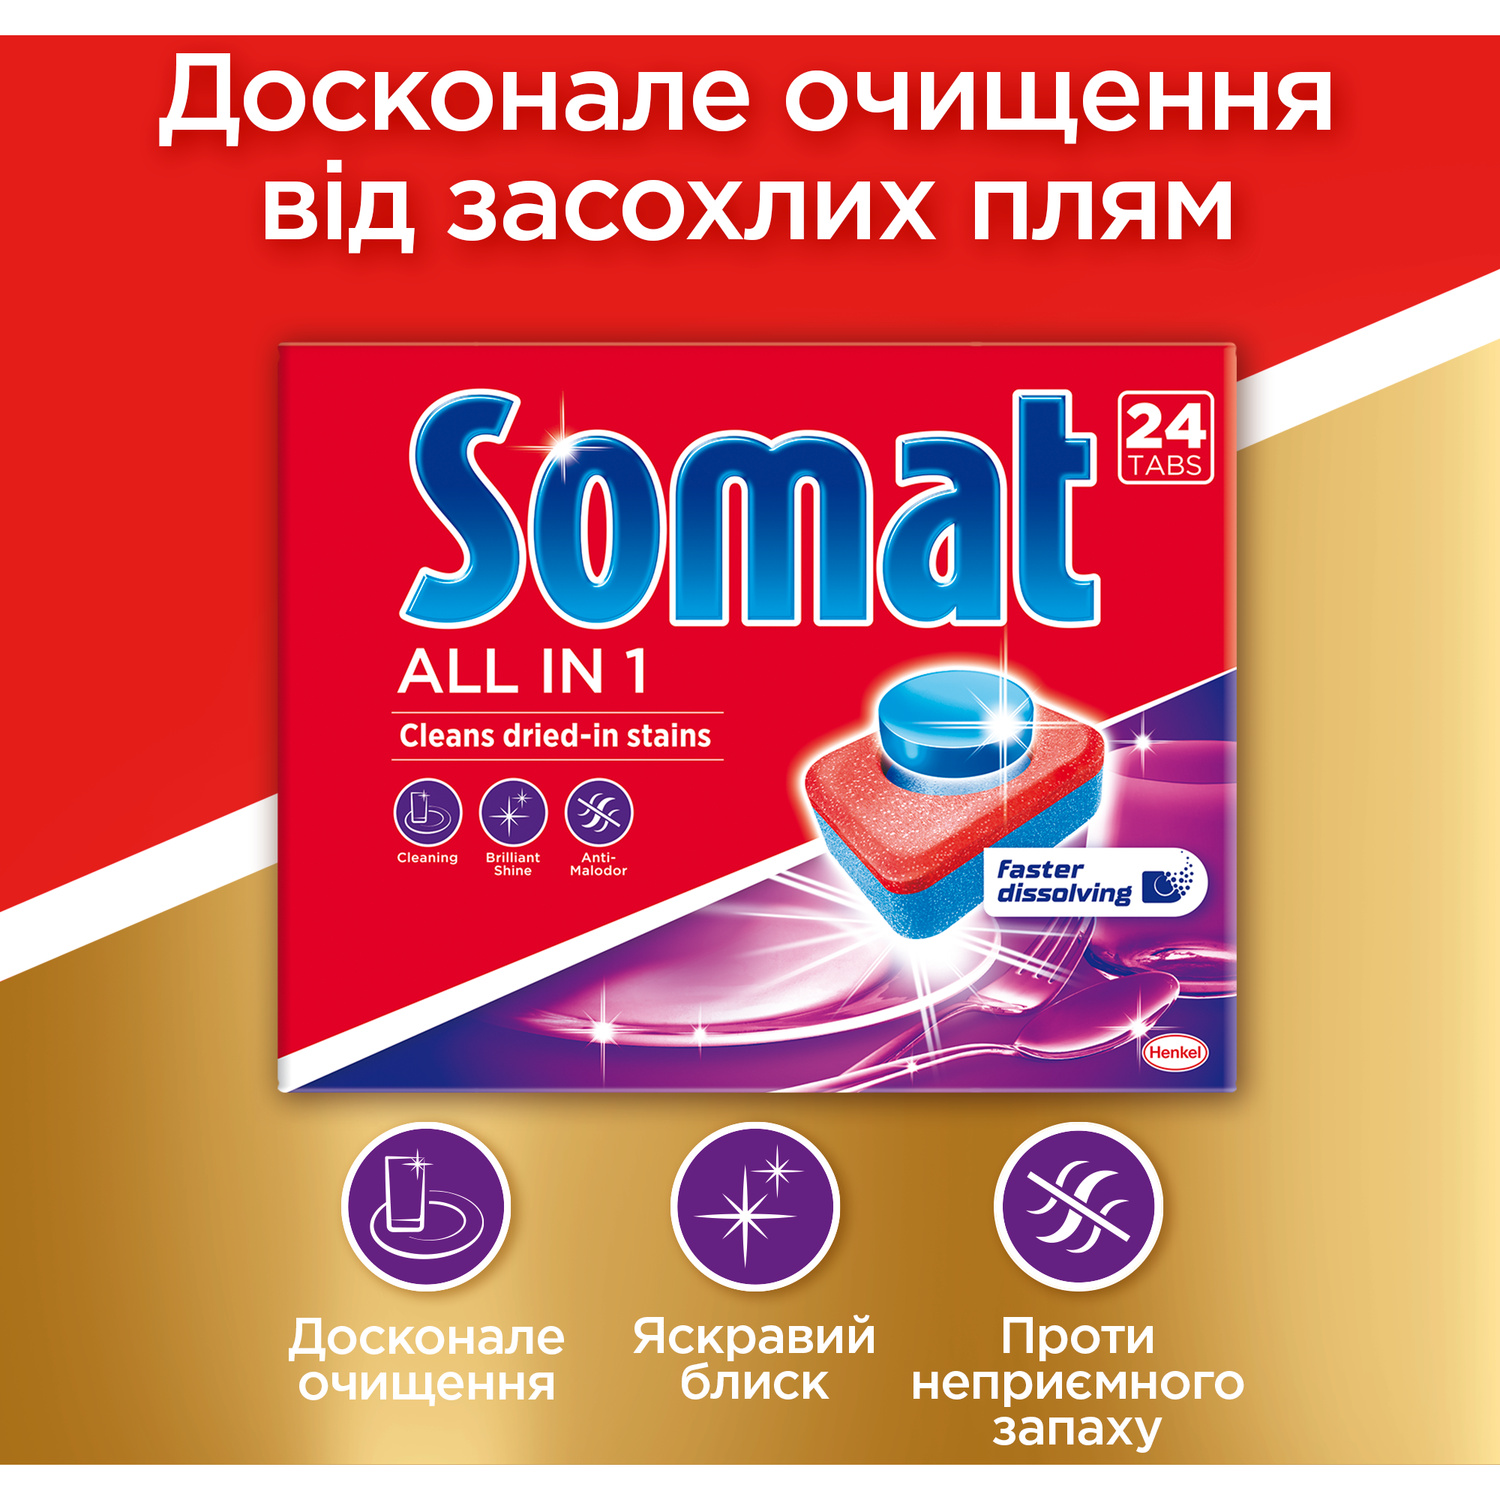 Капсулы для посудомоечной машины Somat Exellence All in one Все в 1 24 таблетки - фото 3